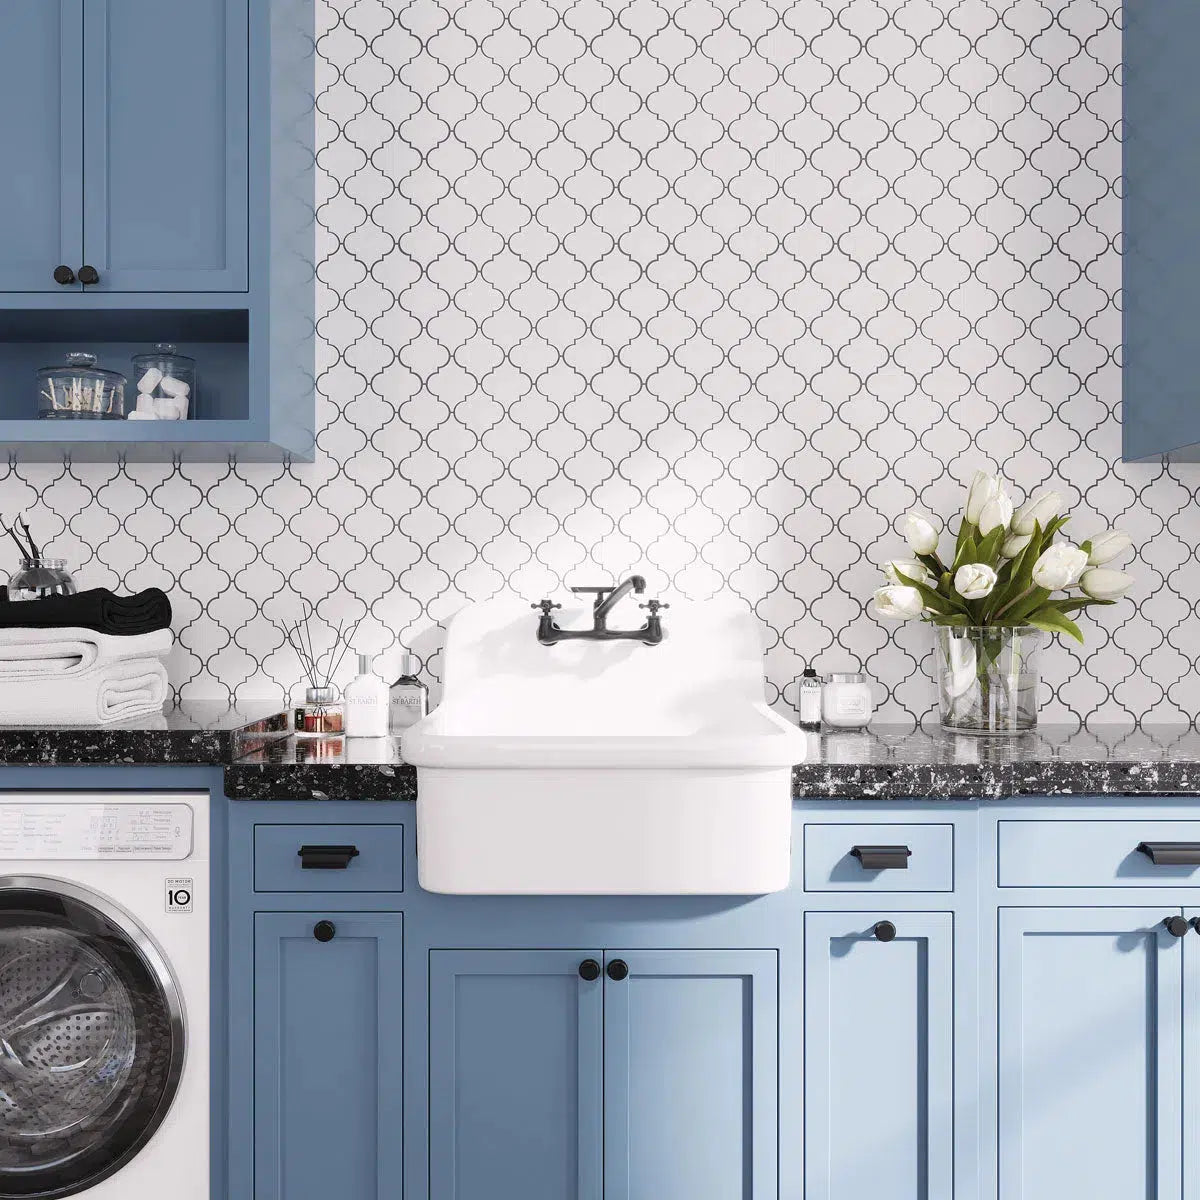 Blue and White laundry room with Arabesque tile mosaic backsplash